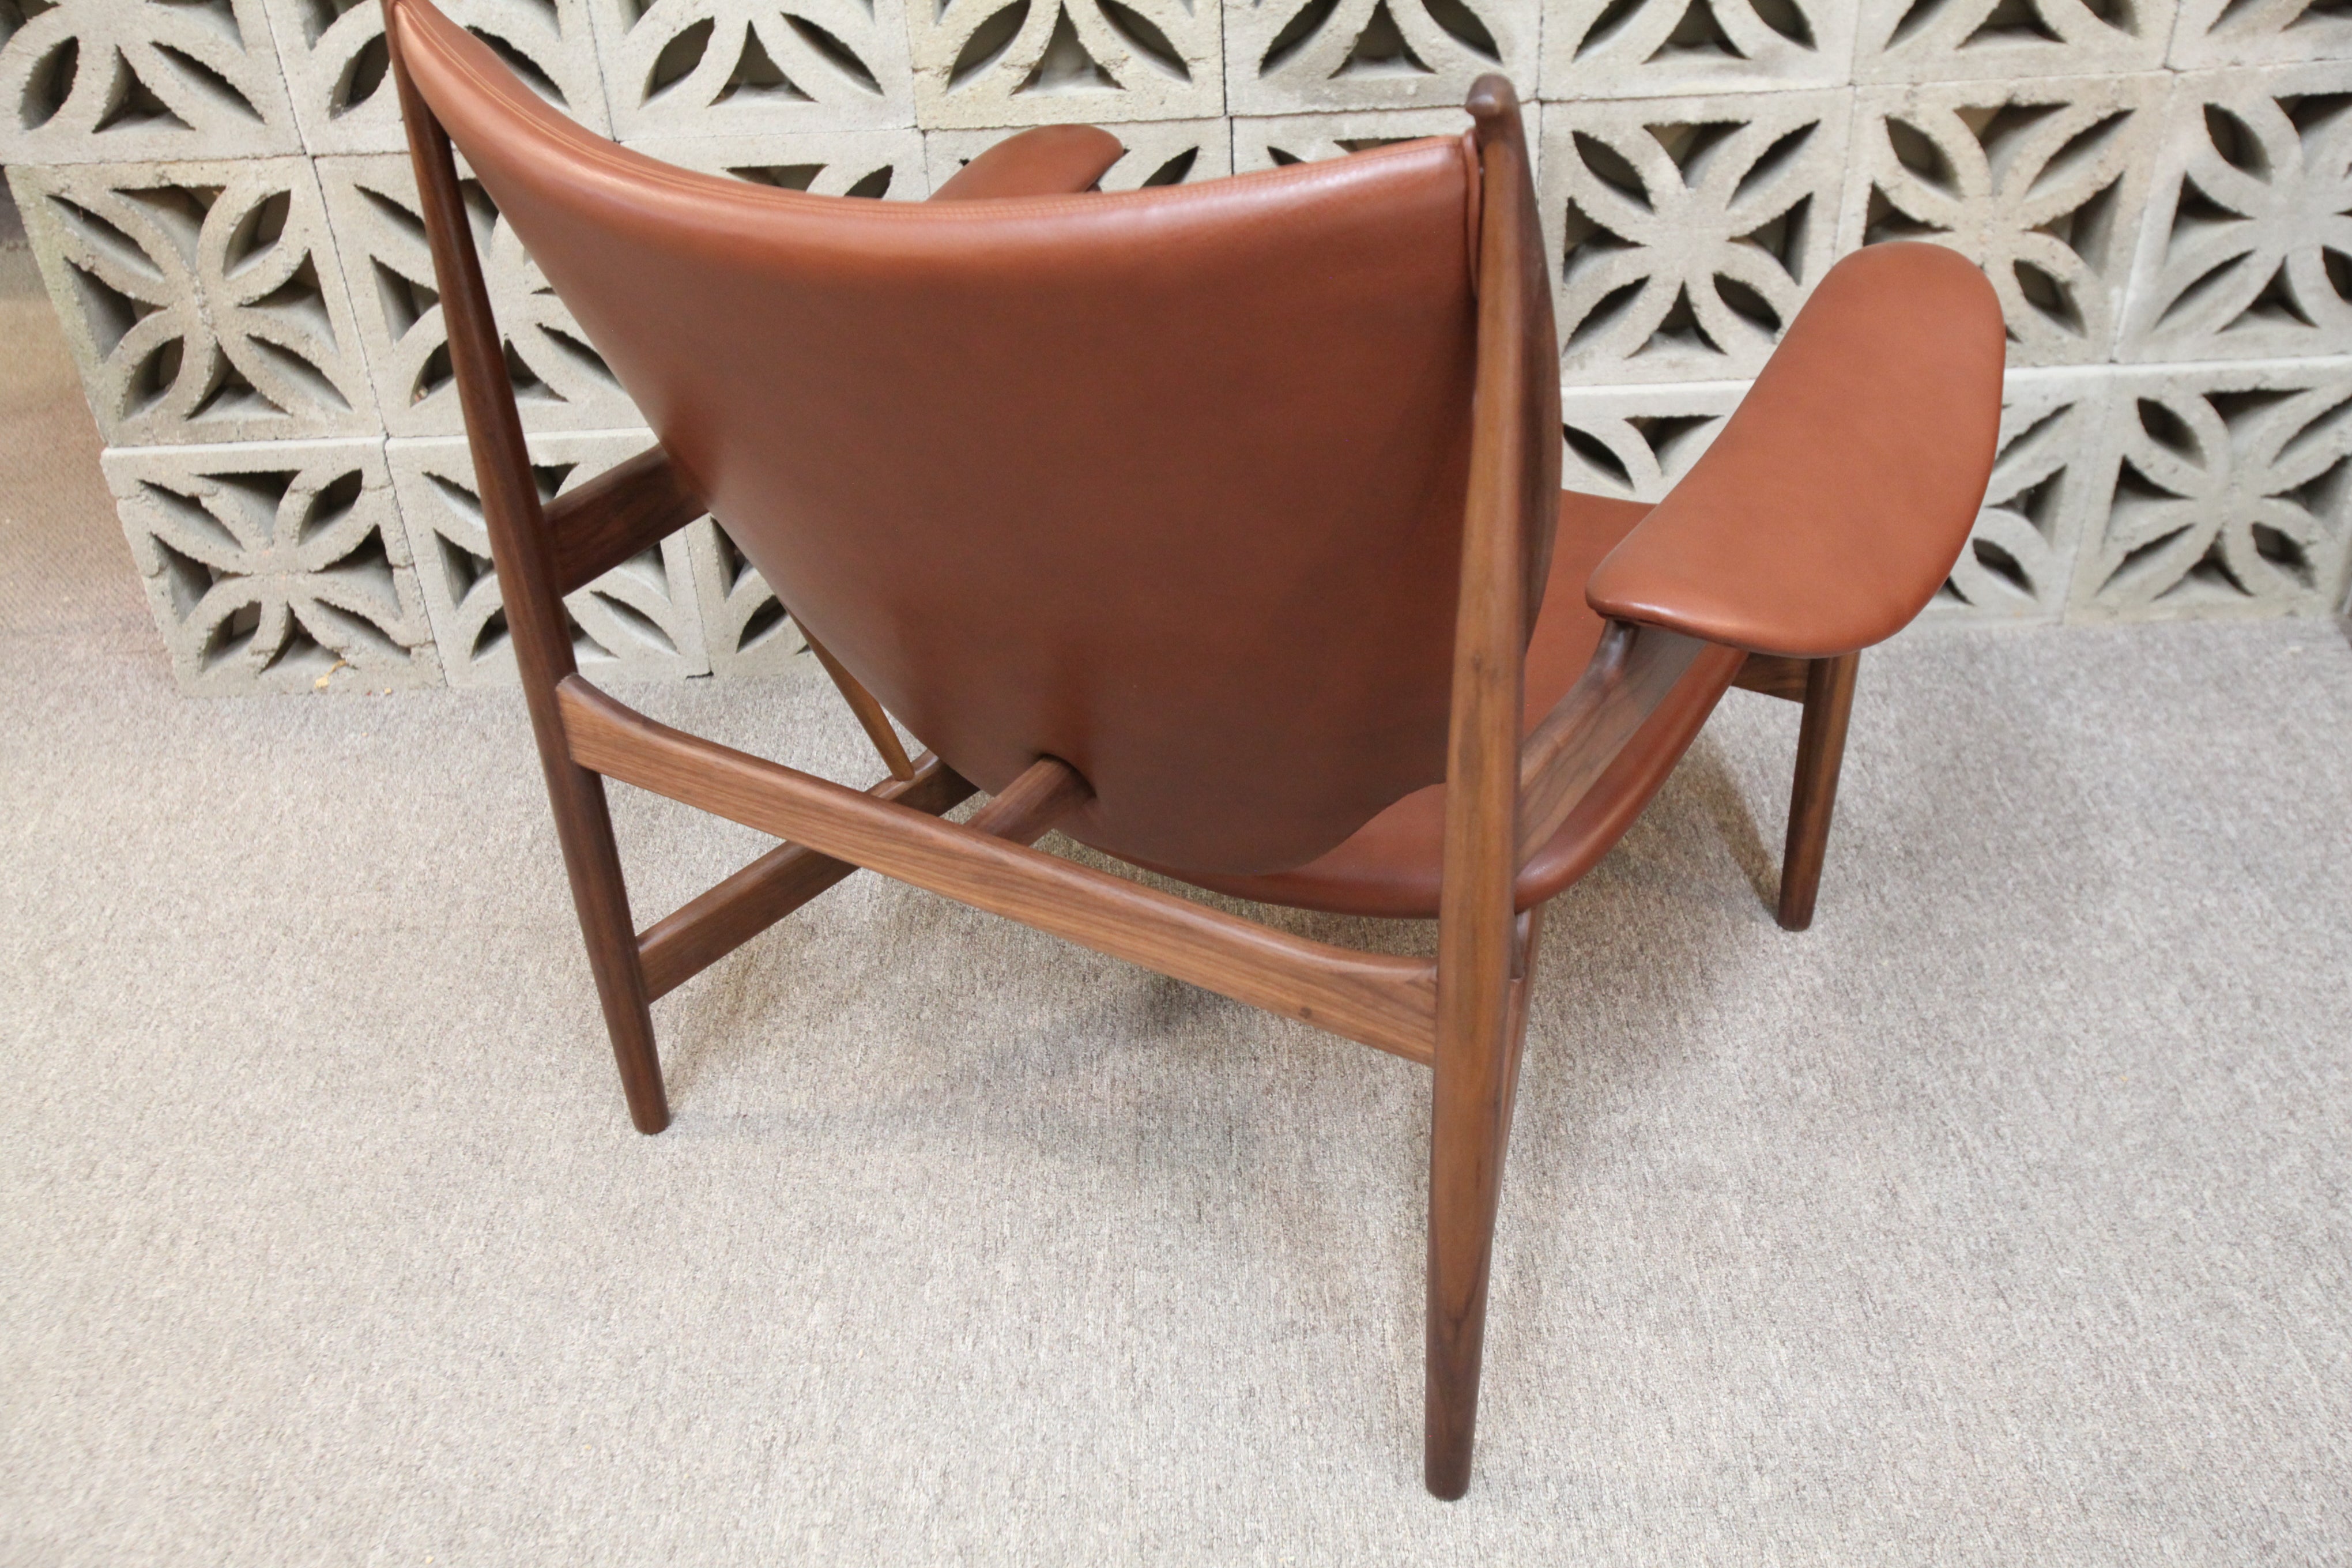 Replica Finn Juhl Chieftain Chair (walnut/brown leather) (40.5"W x 37"H x 35"D)